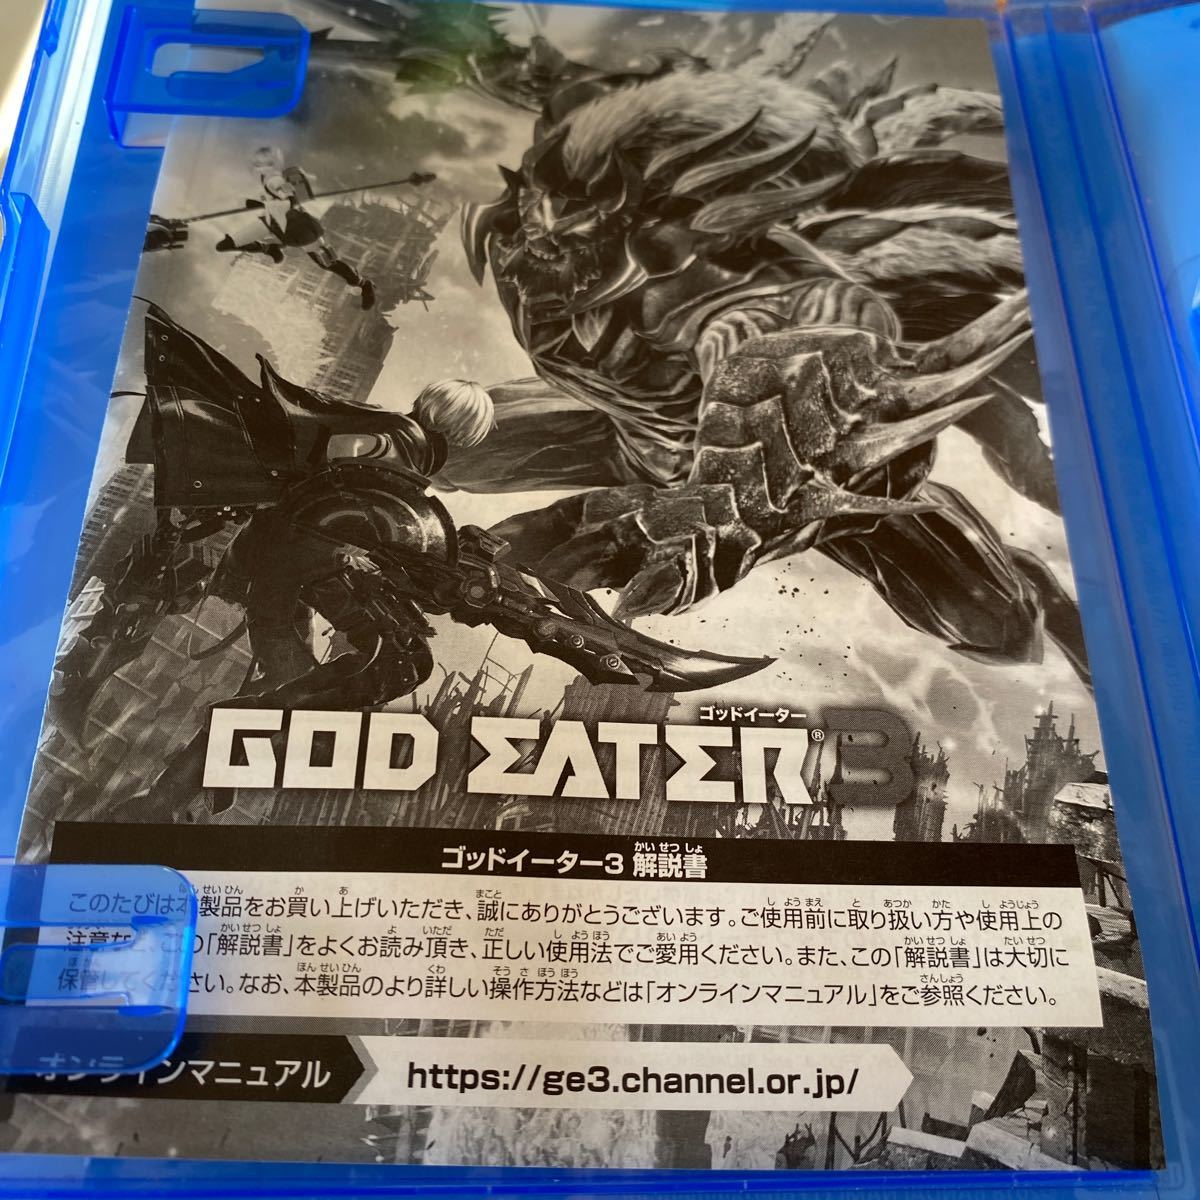 【PS4】 GOD EATER 3 [通常版]